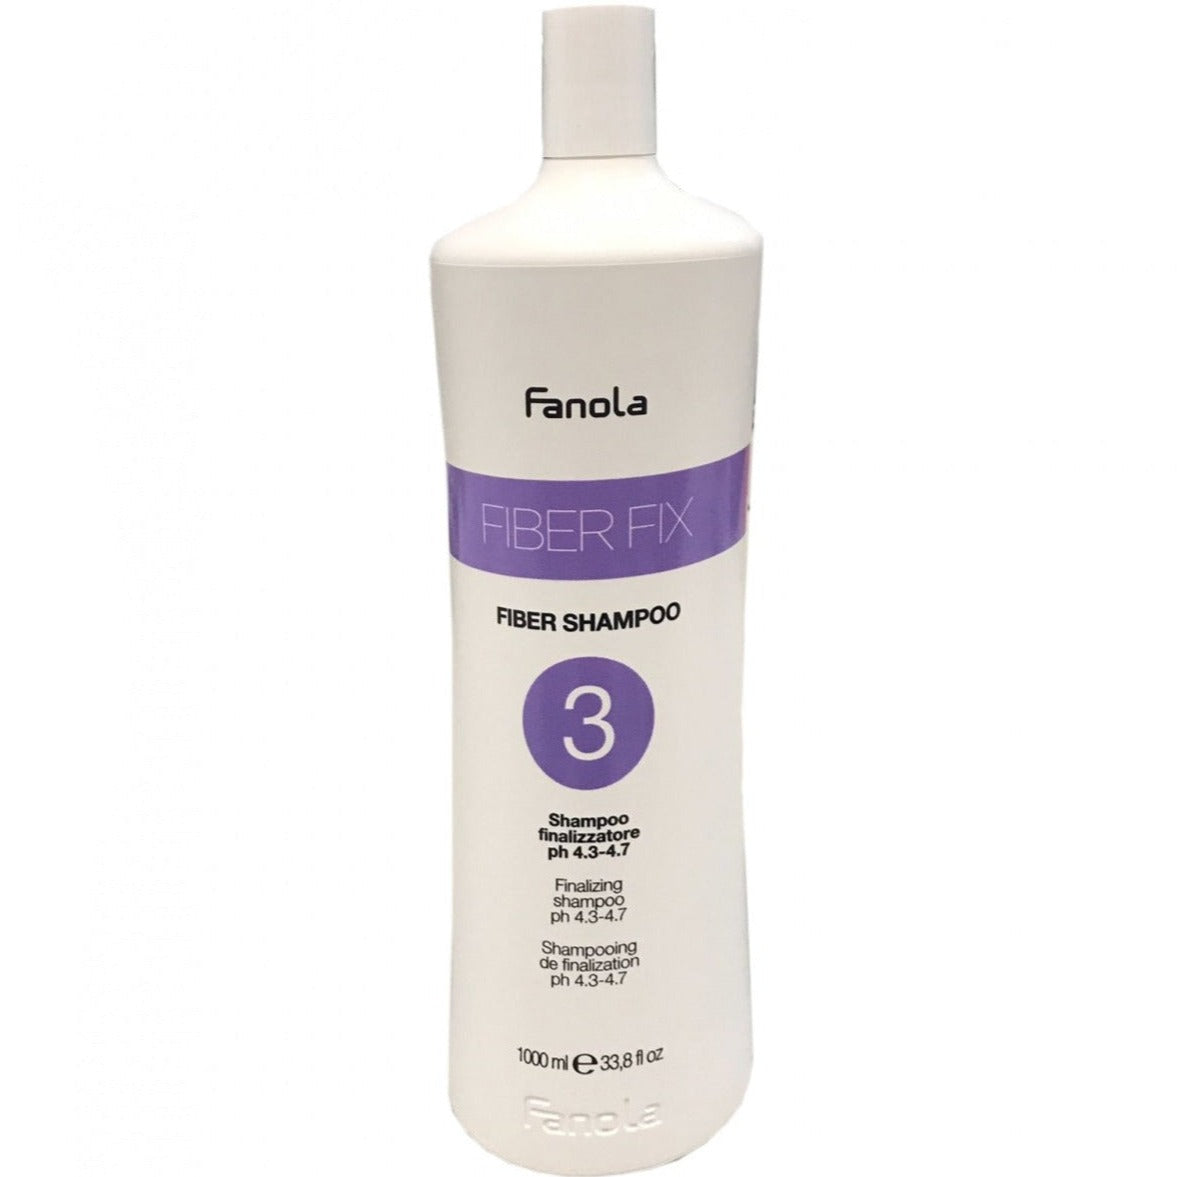 Finalizer Shampoo pH 4.3-4.7 Fiber Shampoo 3 Fiber Fix Fanola 1000 ml